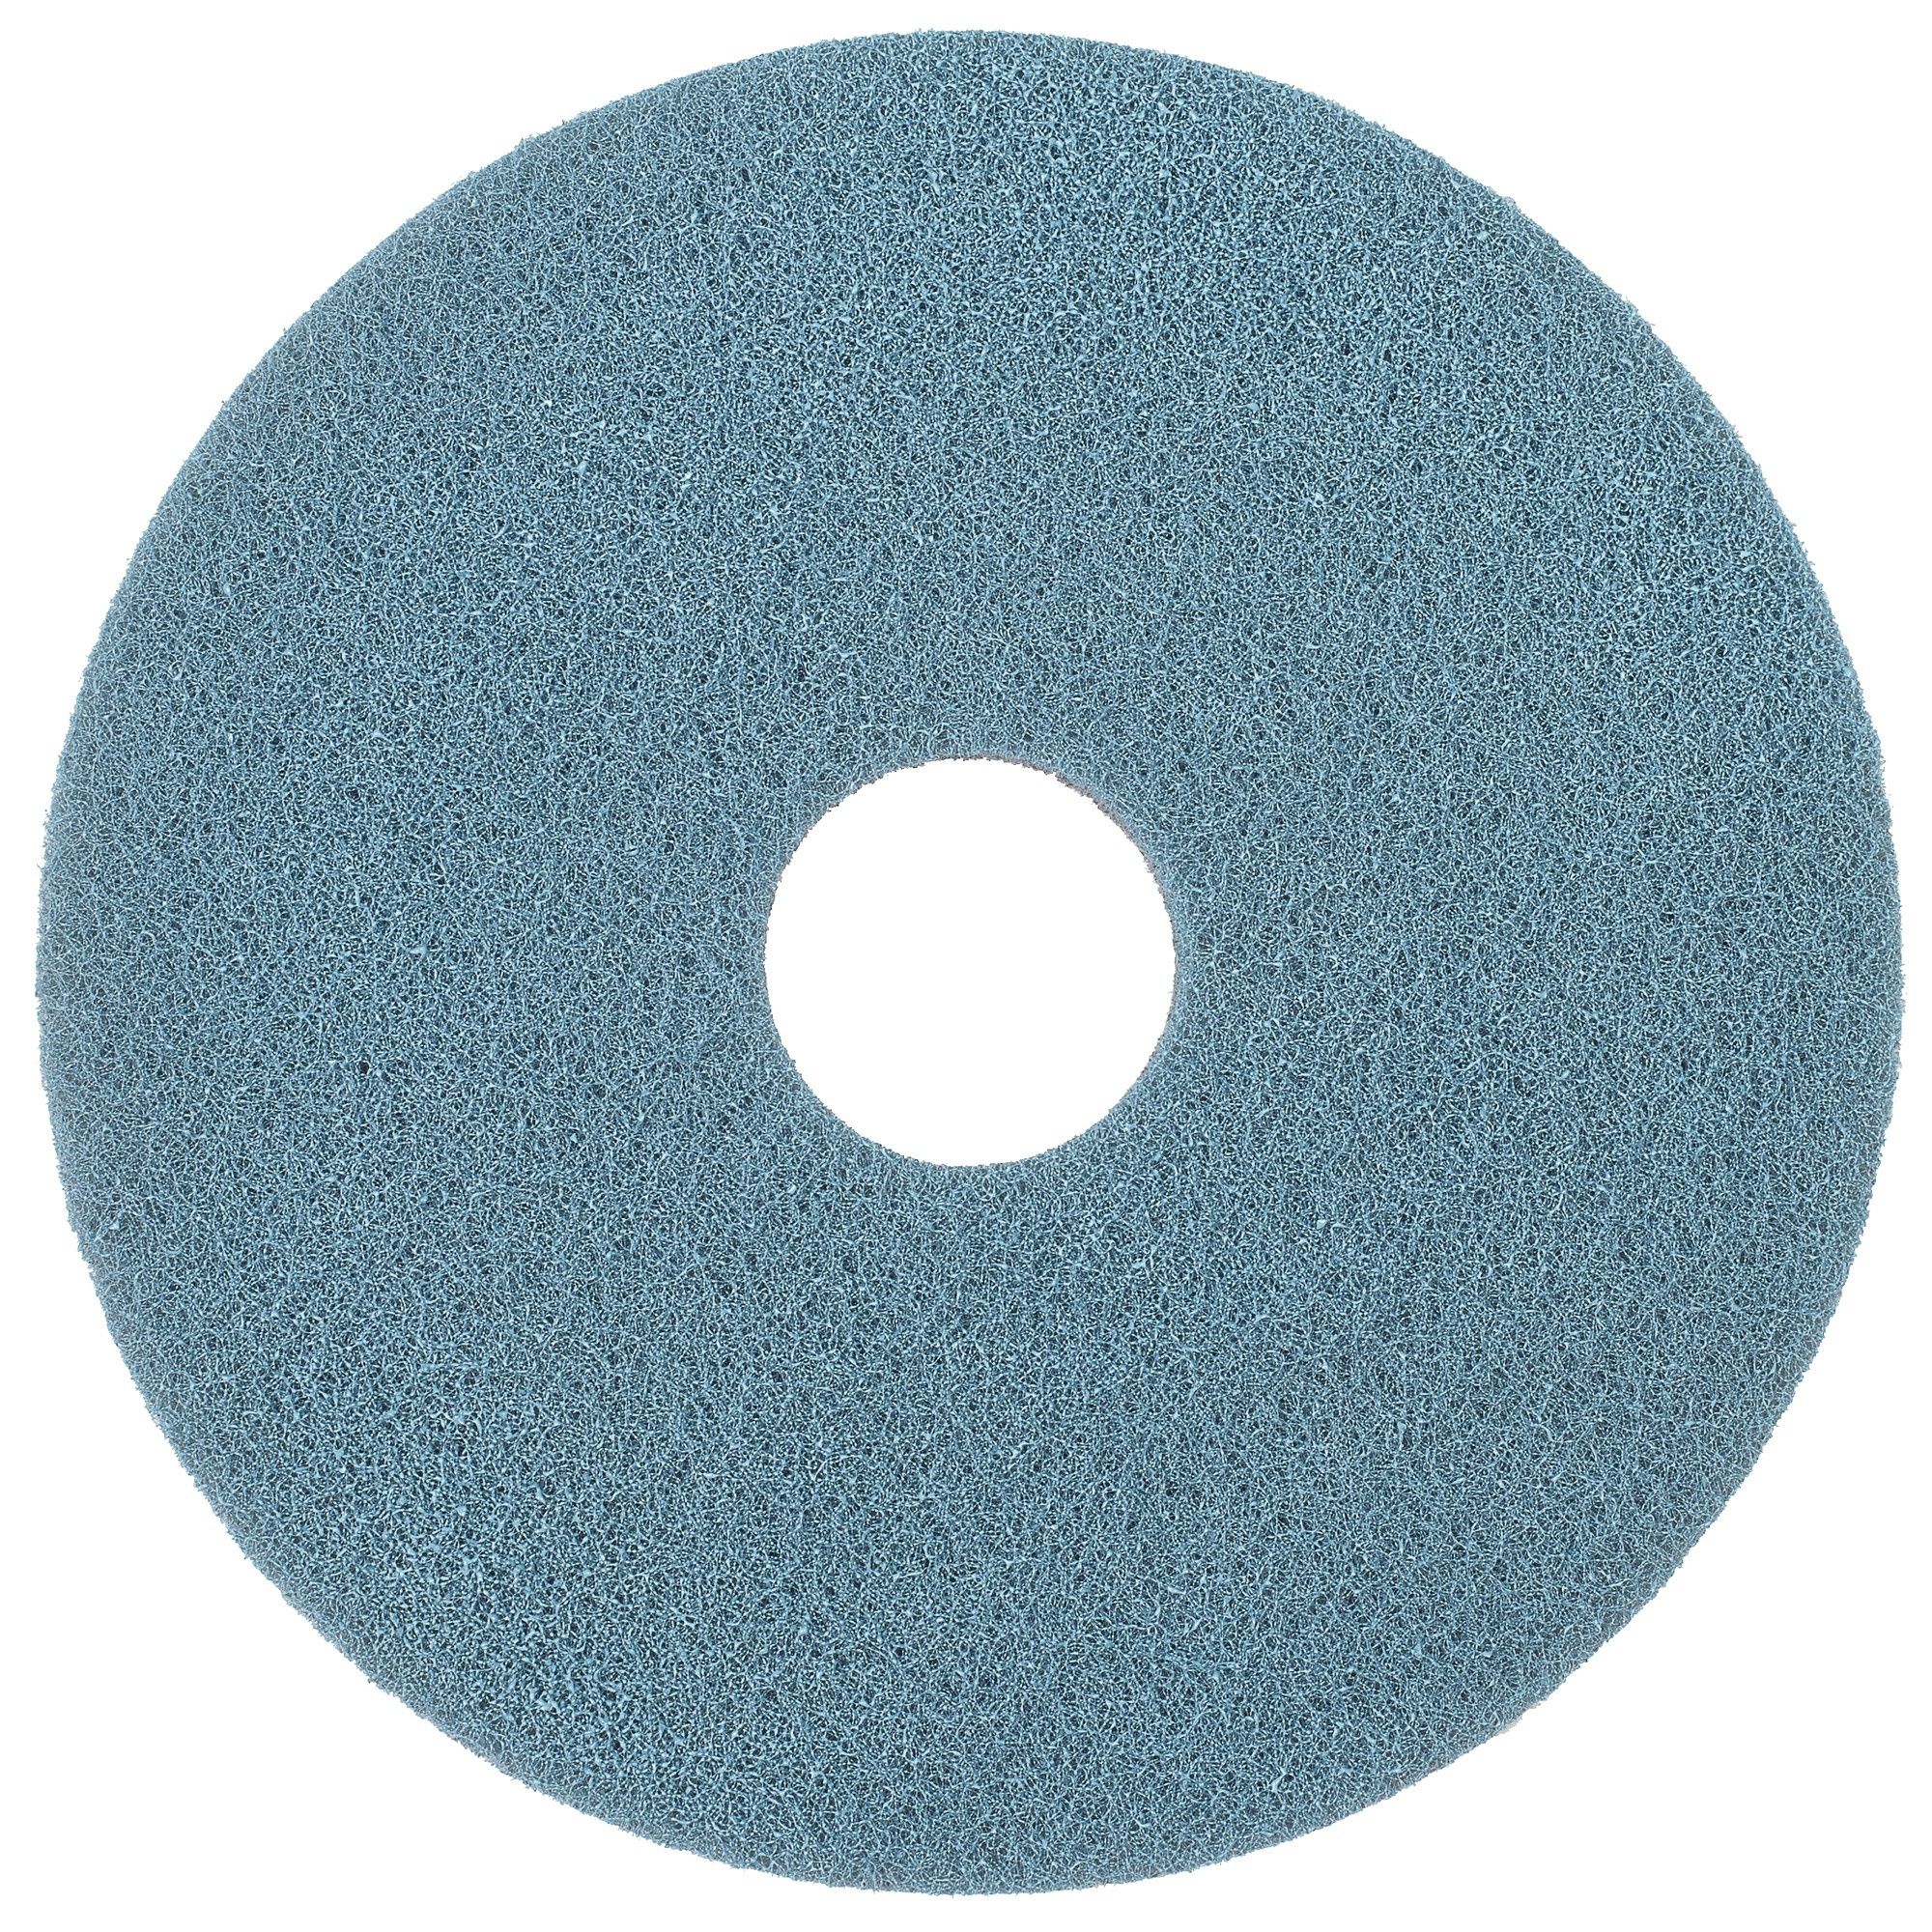 NuPad WaterOnly Xtra blauw (polijsten), per 2 stuks, 20 inch / 508 mm